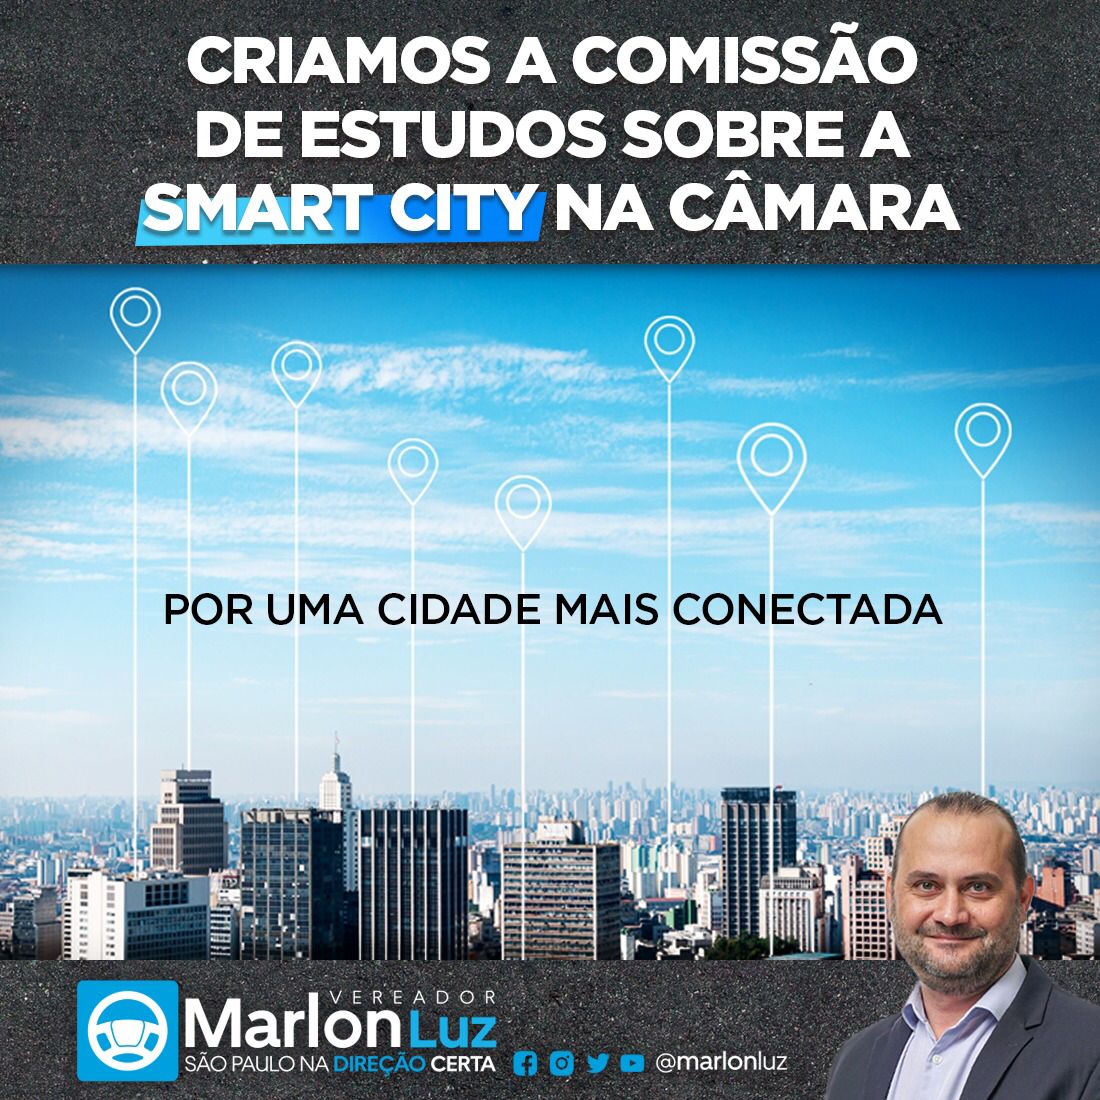 APROVADA CRIAÇÃO DA COMISSÃO DE ESTUDOS SOBRE SMART CITY